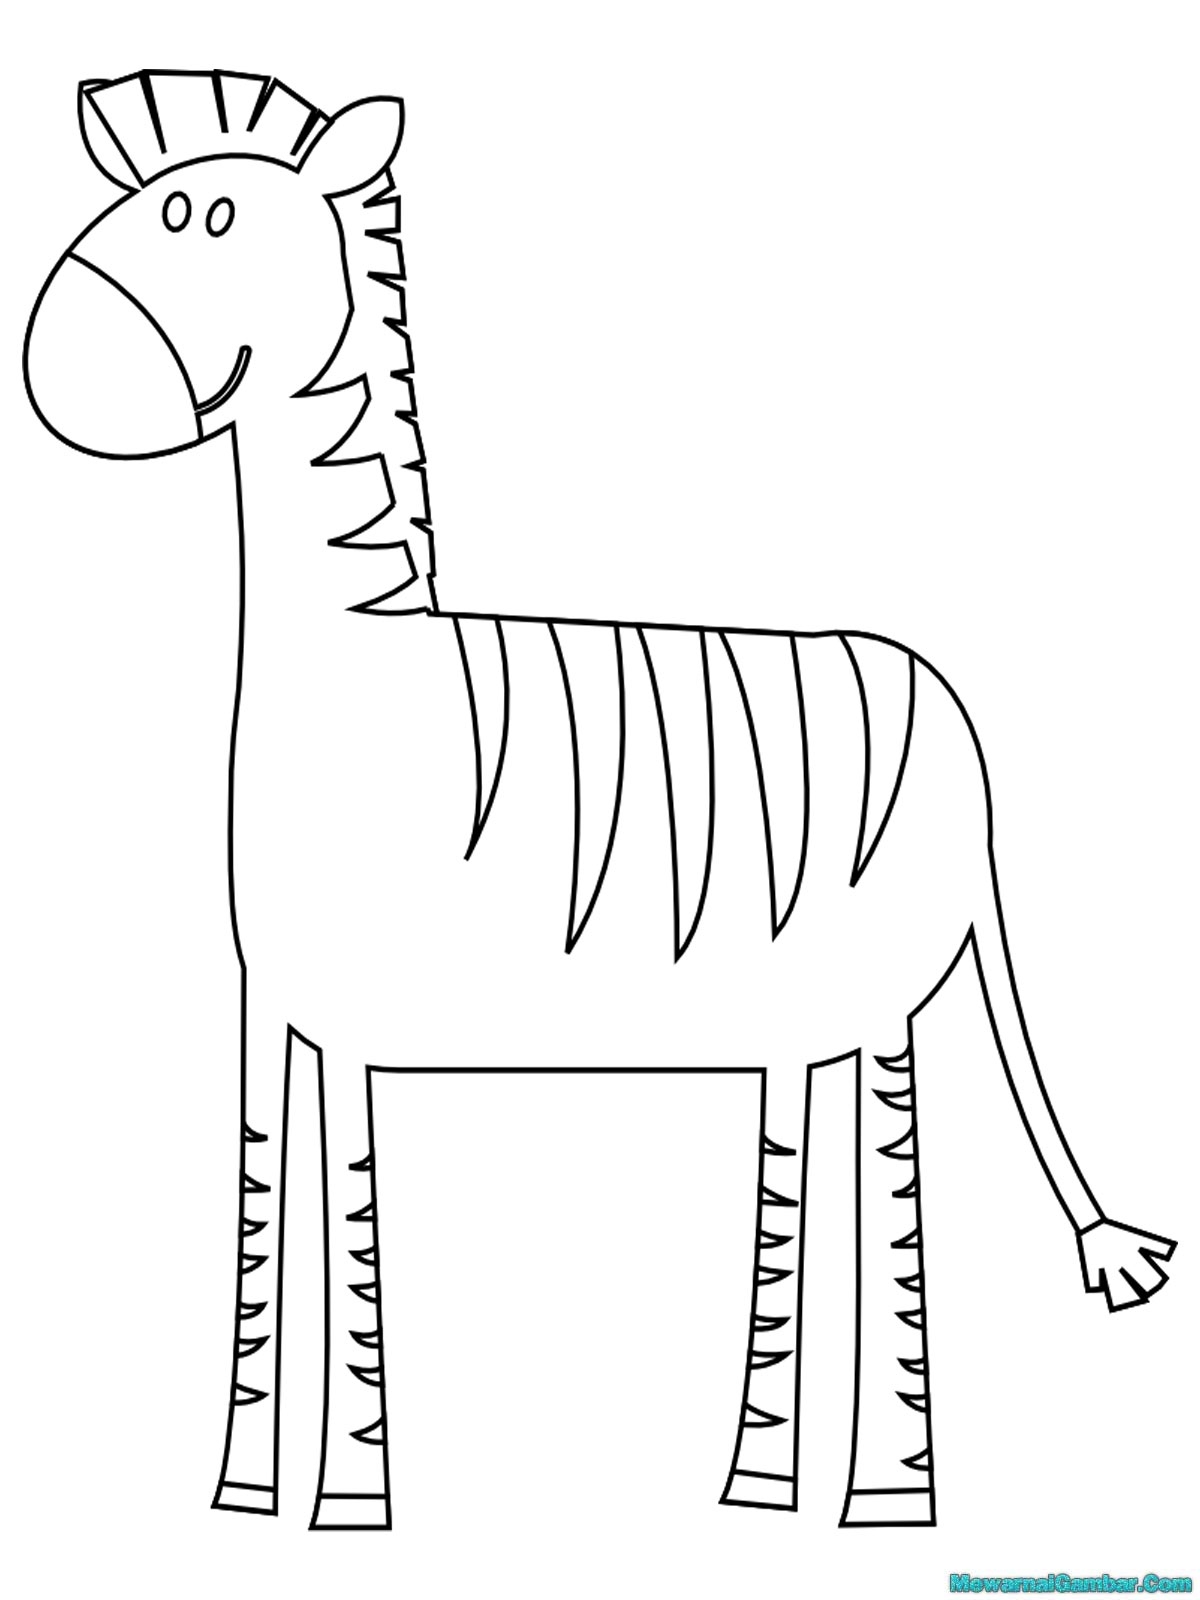  Gambar  Kuda Zebra  Untuk Mewarnai